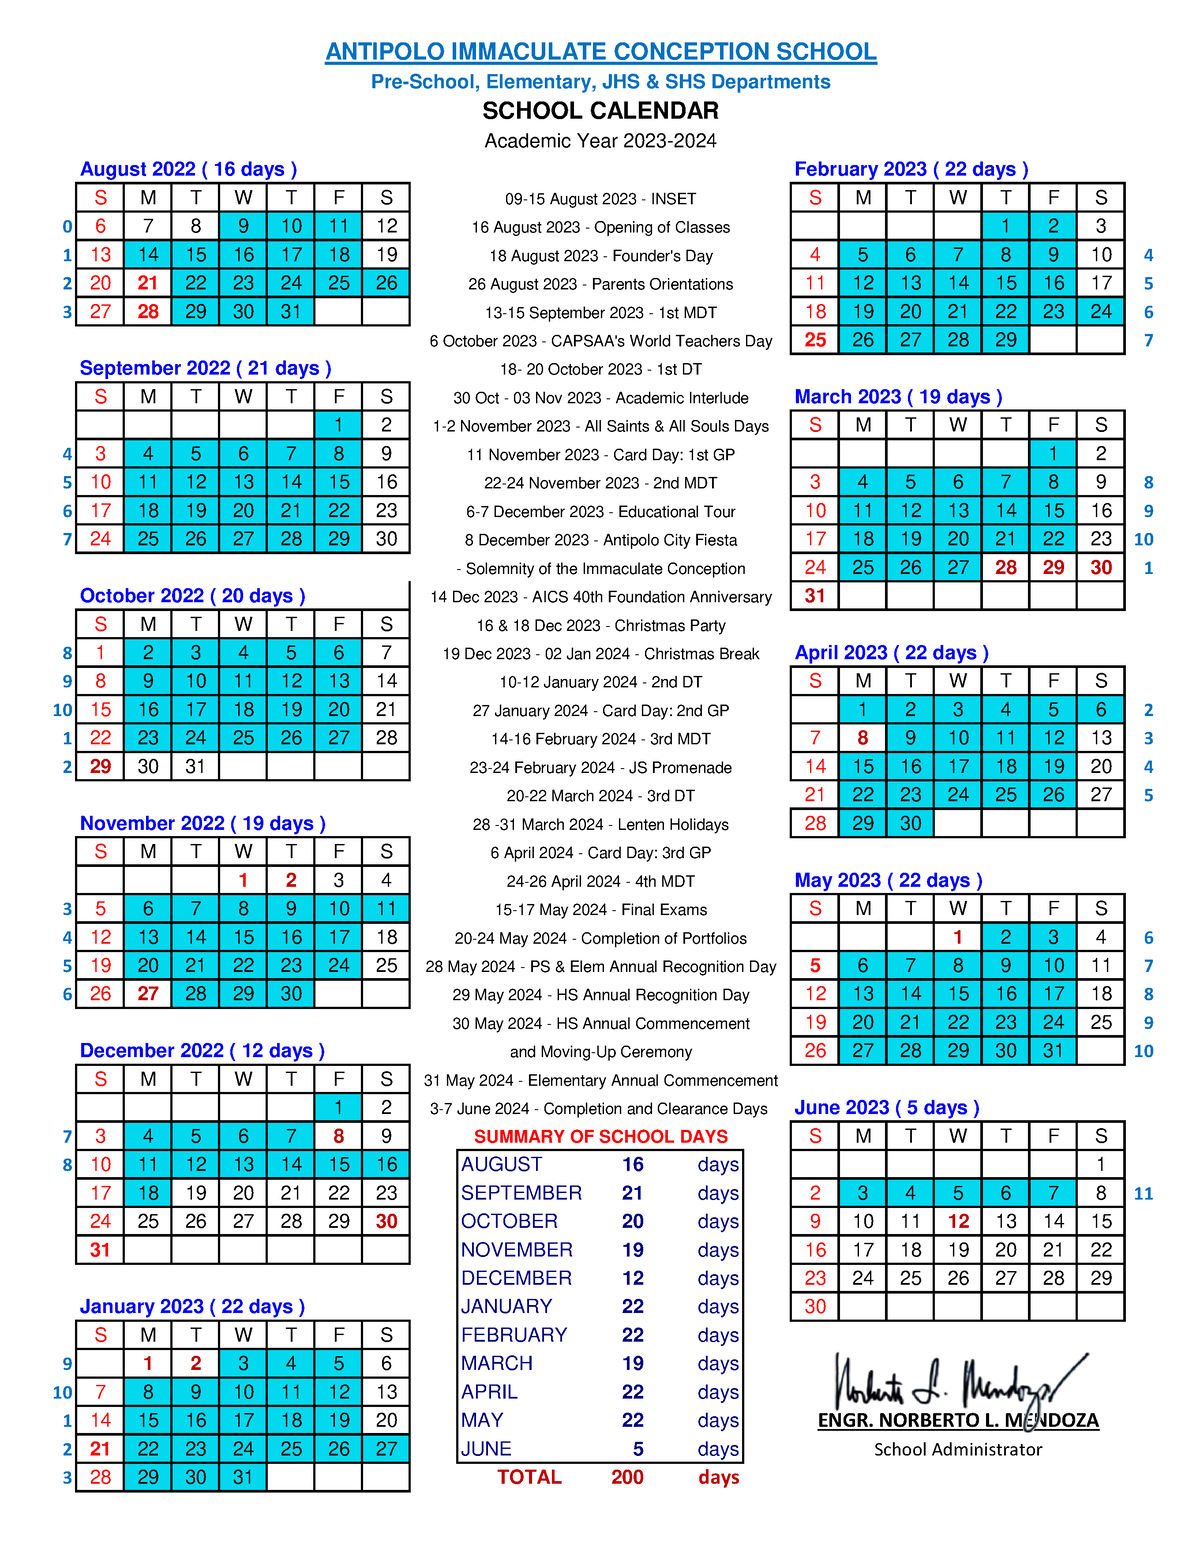 AICS School Calendar AY2023 2024 S M T W T F S S M T W T F S 0 6 7 8 